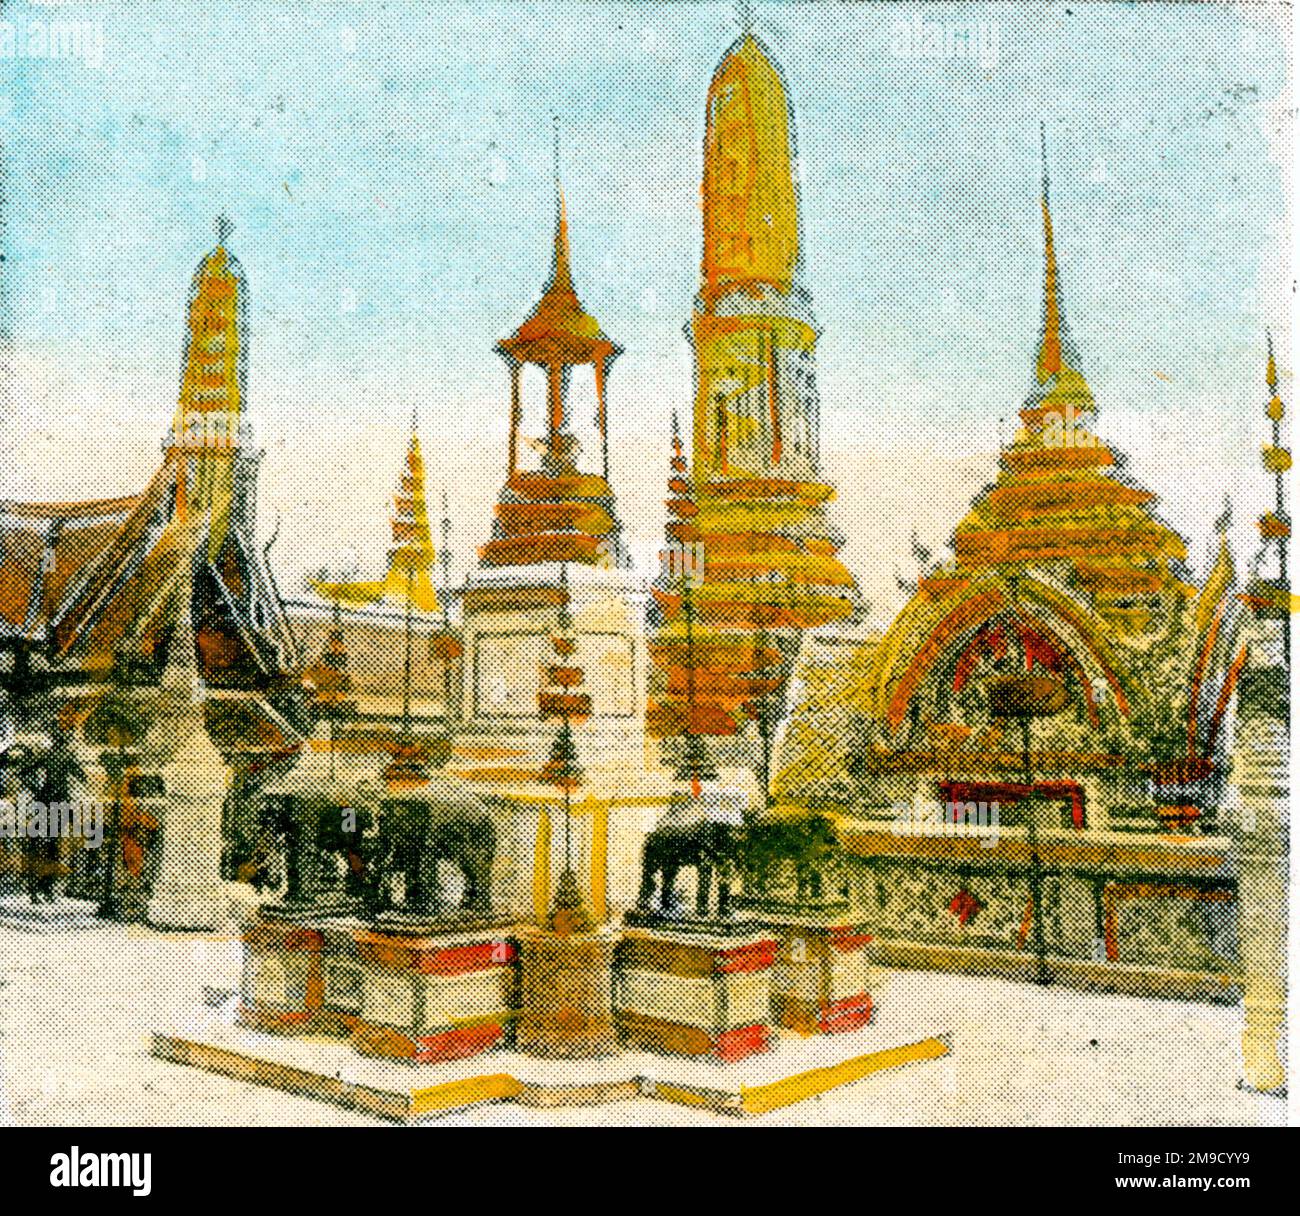 Palace Grounds - Bangkok Stock Photo